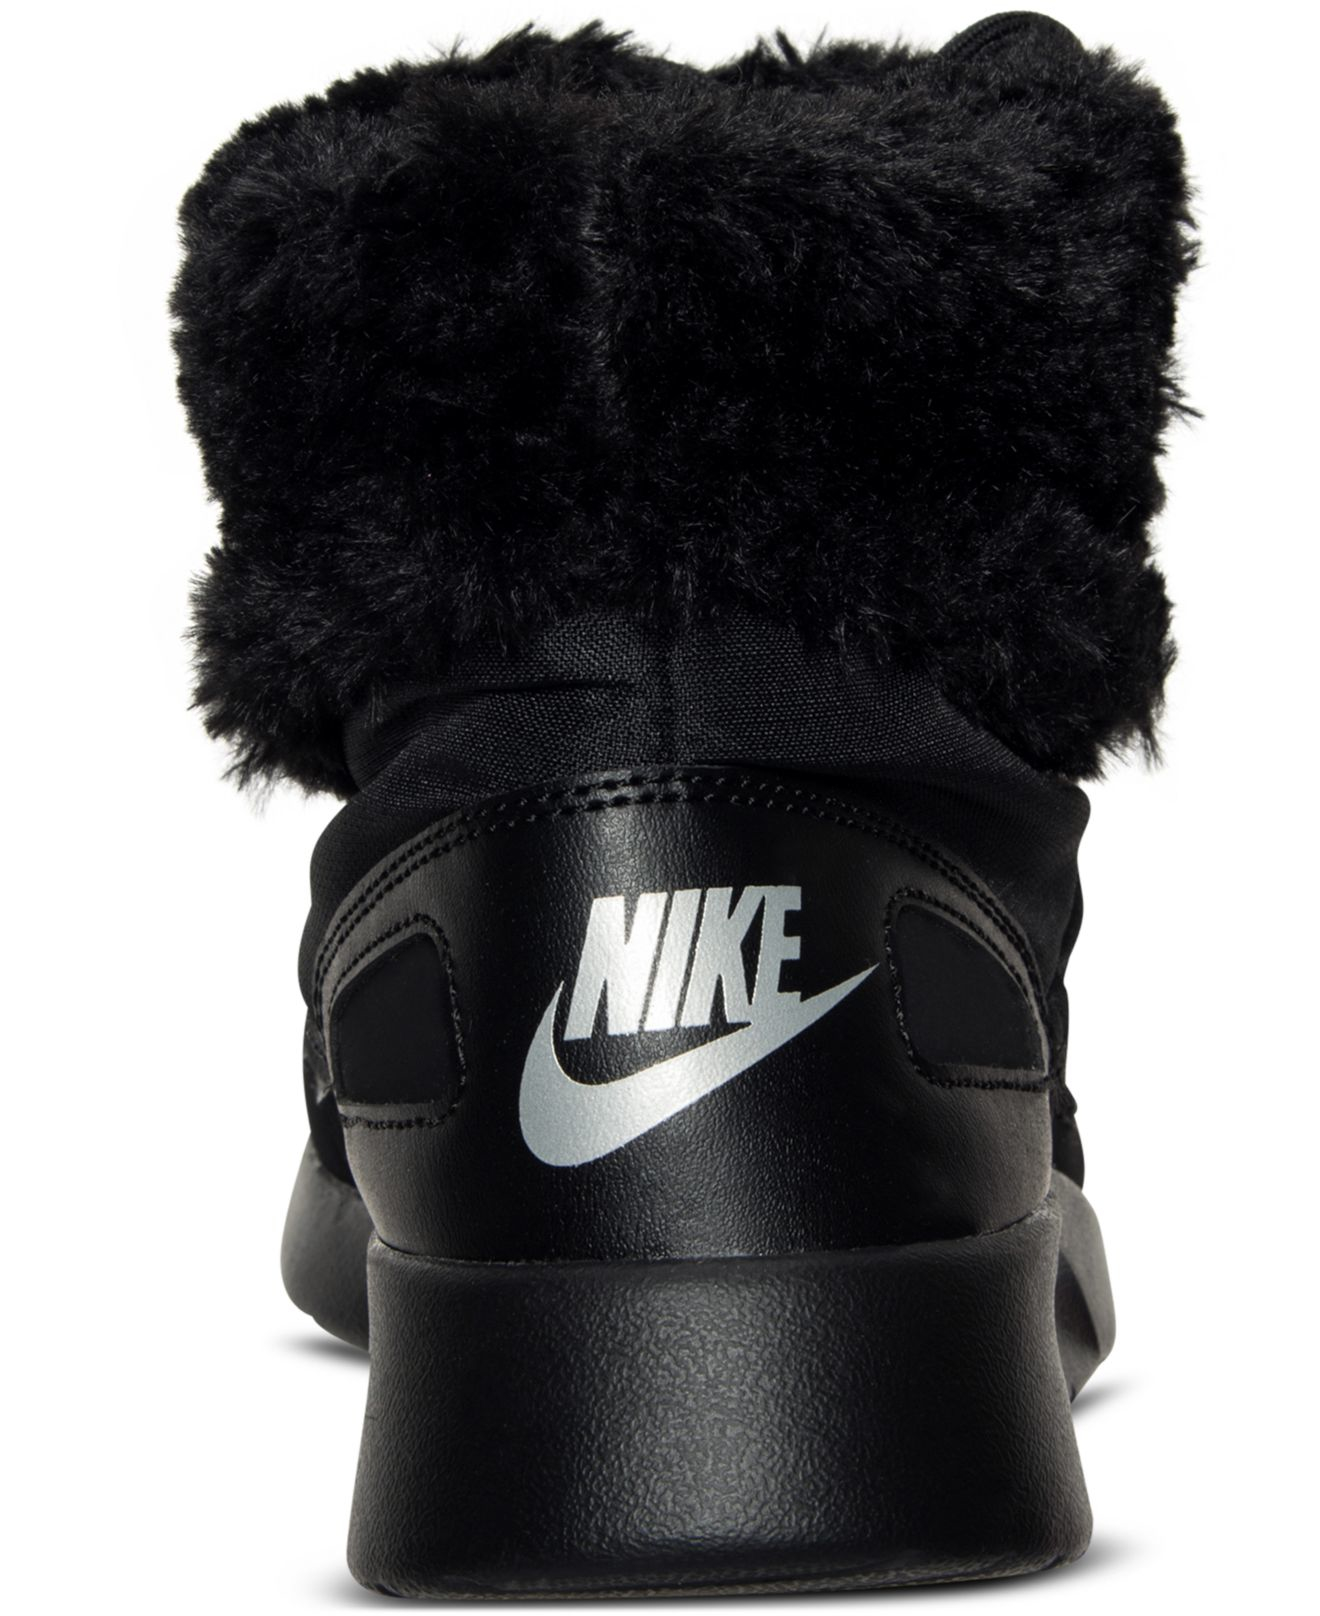 Nike nike strike night boots for women shoes Miami Hurricanes DV2913 - 001  - nike mid air morgans black